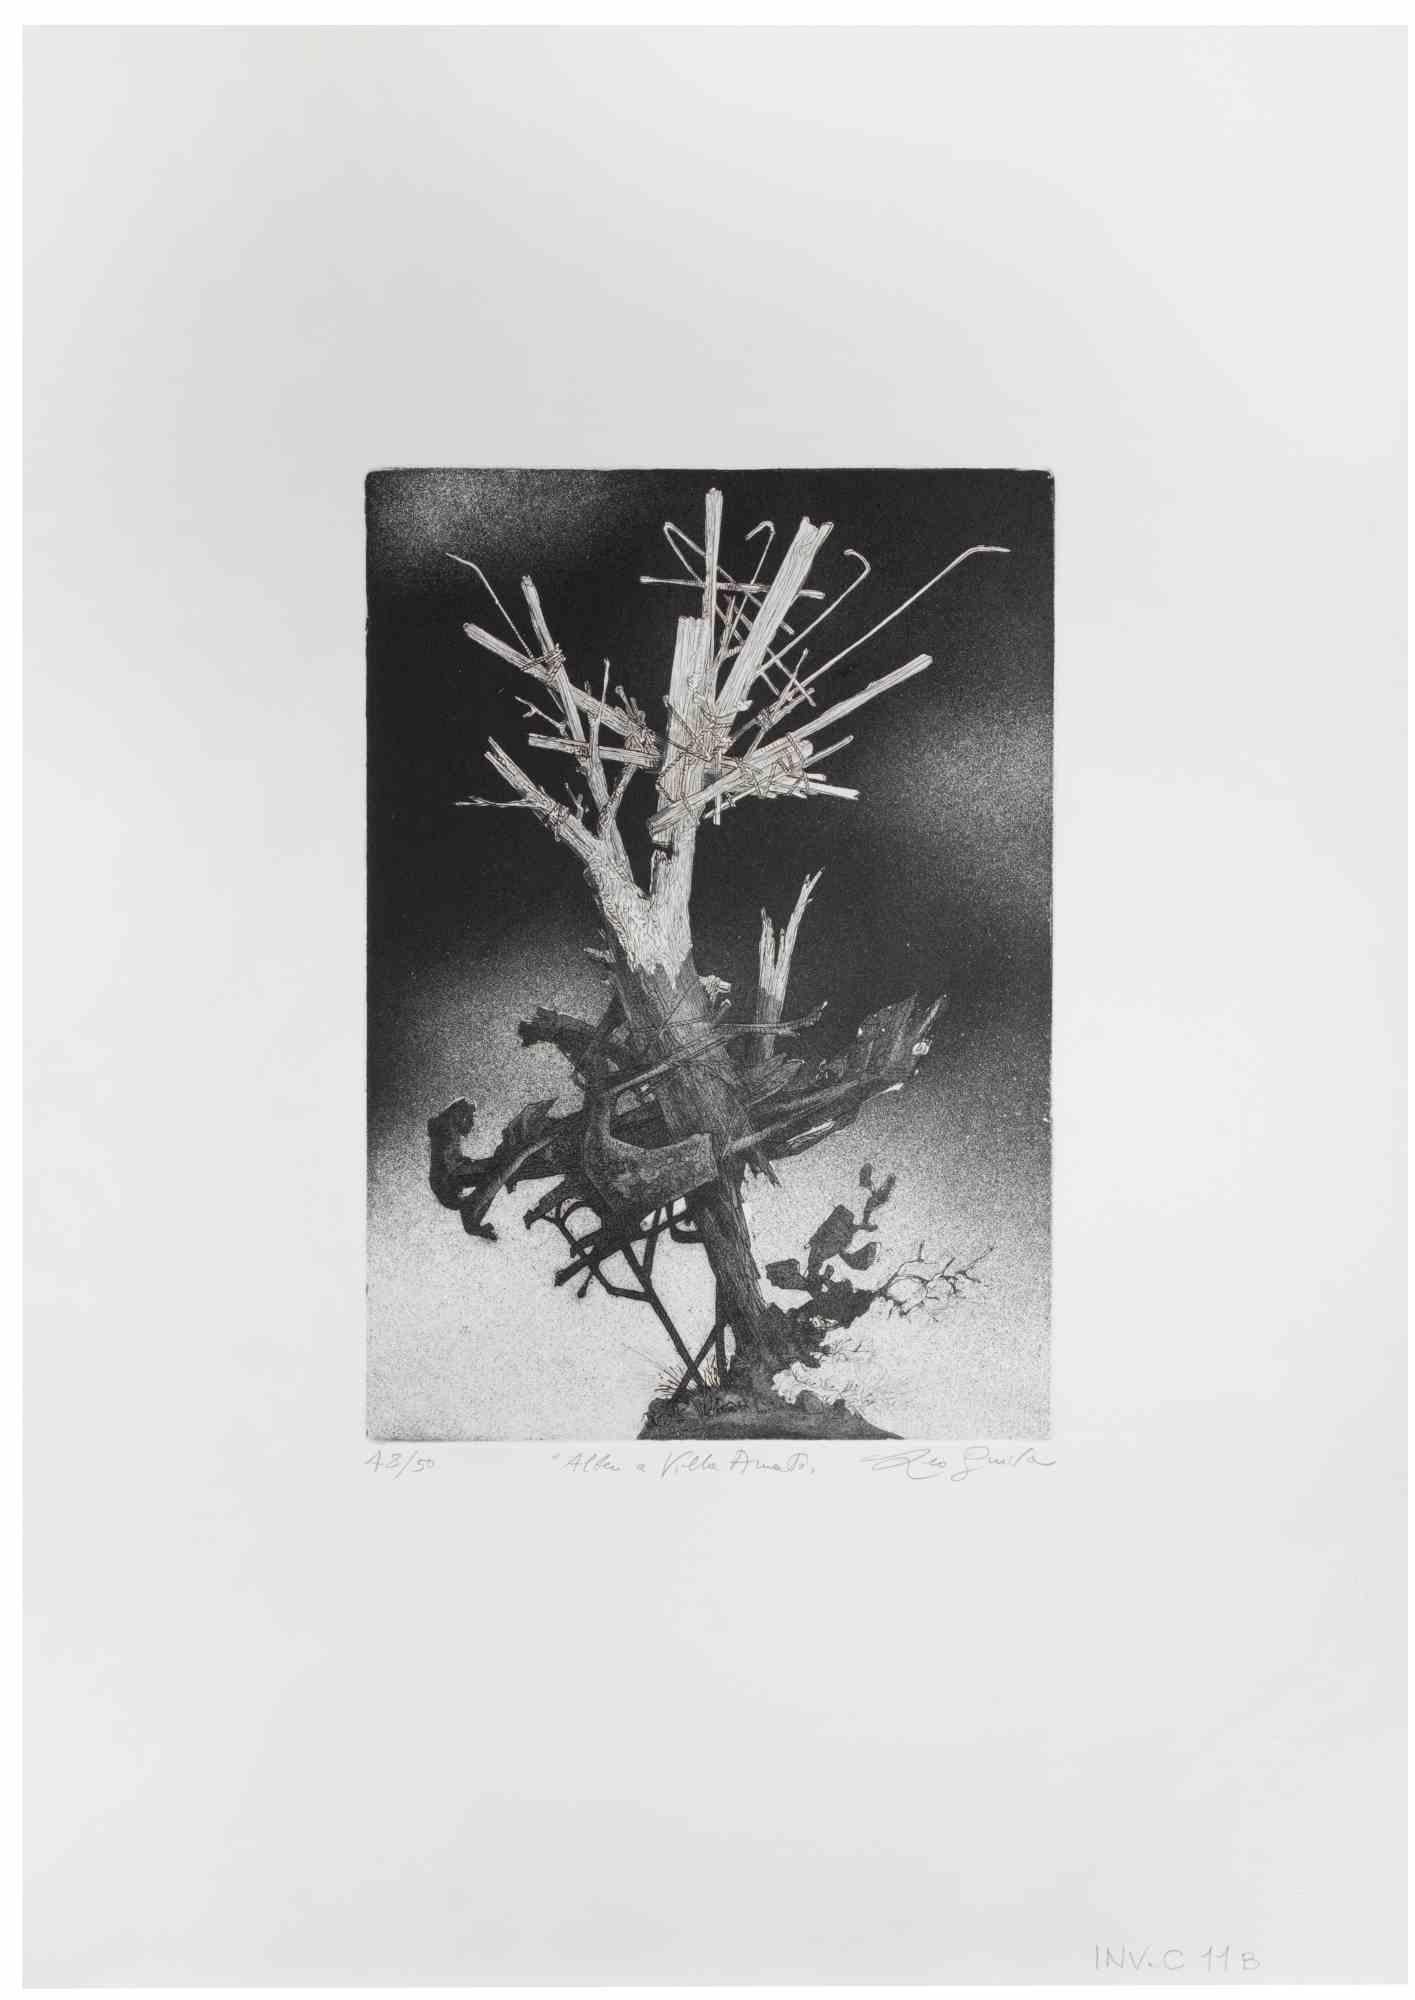 Der Baum in der Villa ist ein Kunstwerk des zeitgenössischen italienischen Künstlers  Leo Guida (1992 - 2017) in den 1970er Jahren.

Original-Radierung in Schwarz-Weiß auf Papier.

Handsigniert am unteren rechten Rand, nummerierte Auflage von 50